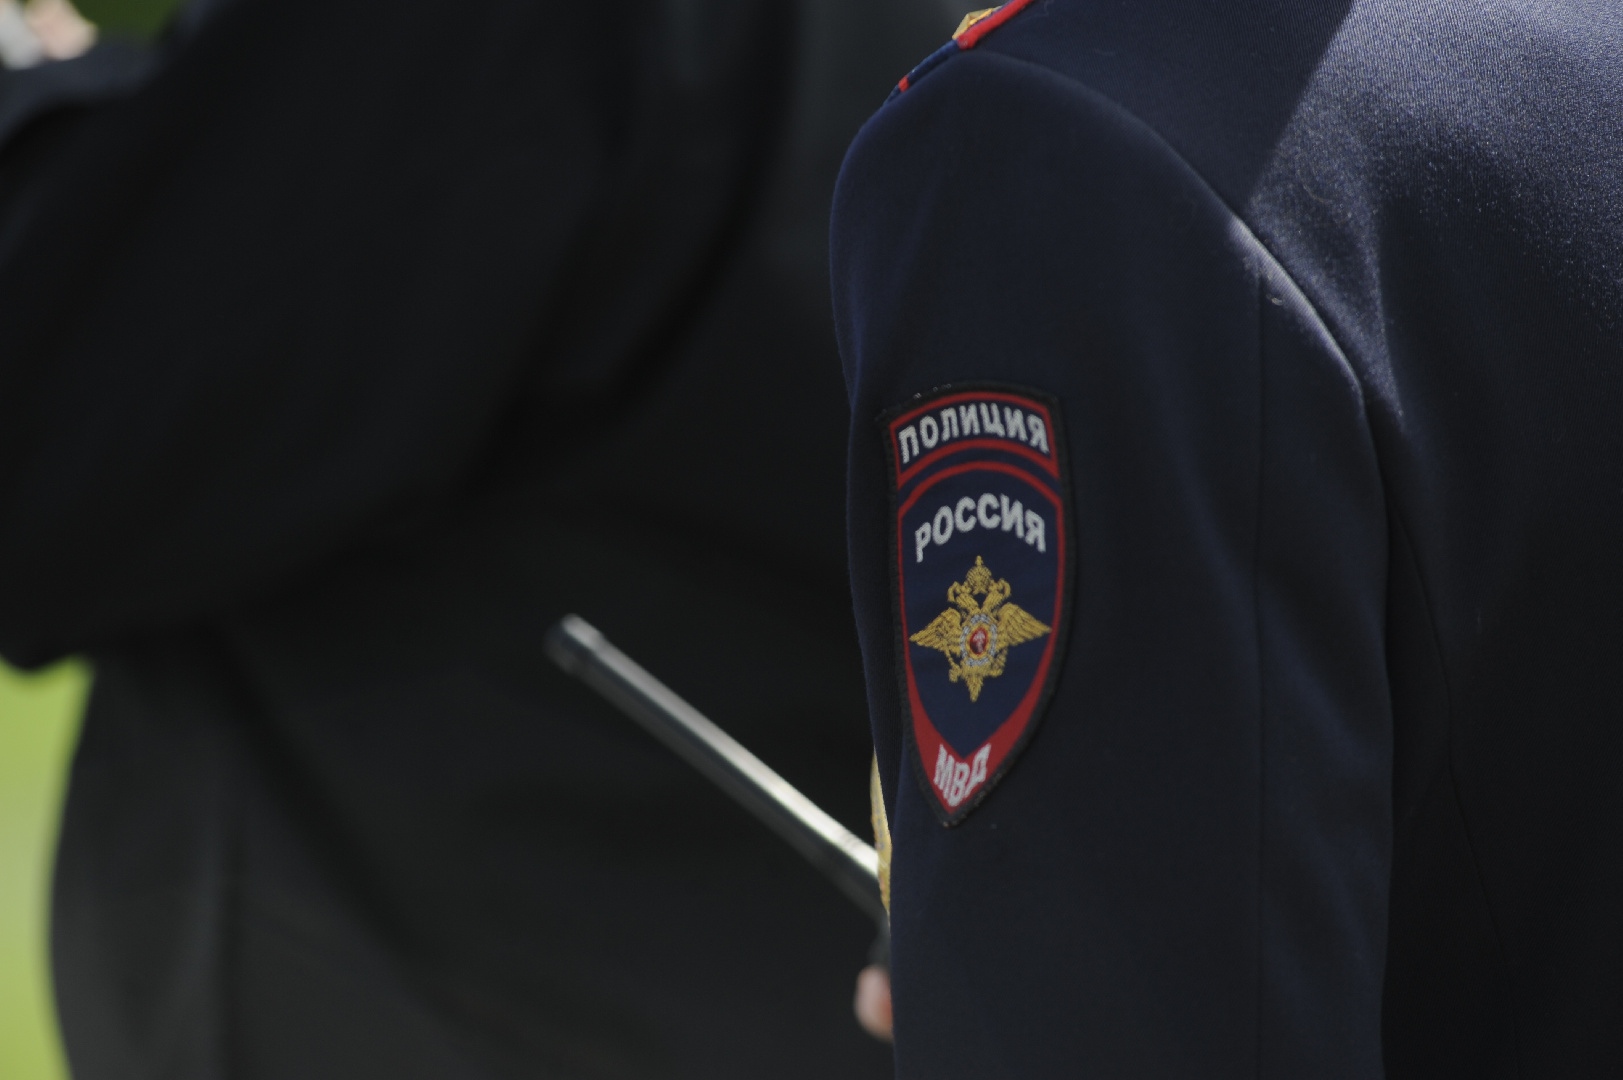 Оторванным погоном. Полиция проводит проверку. Пределы прокуратуры фото. Фотография русской полиции с флагом.